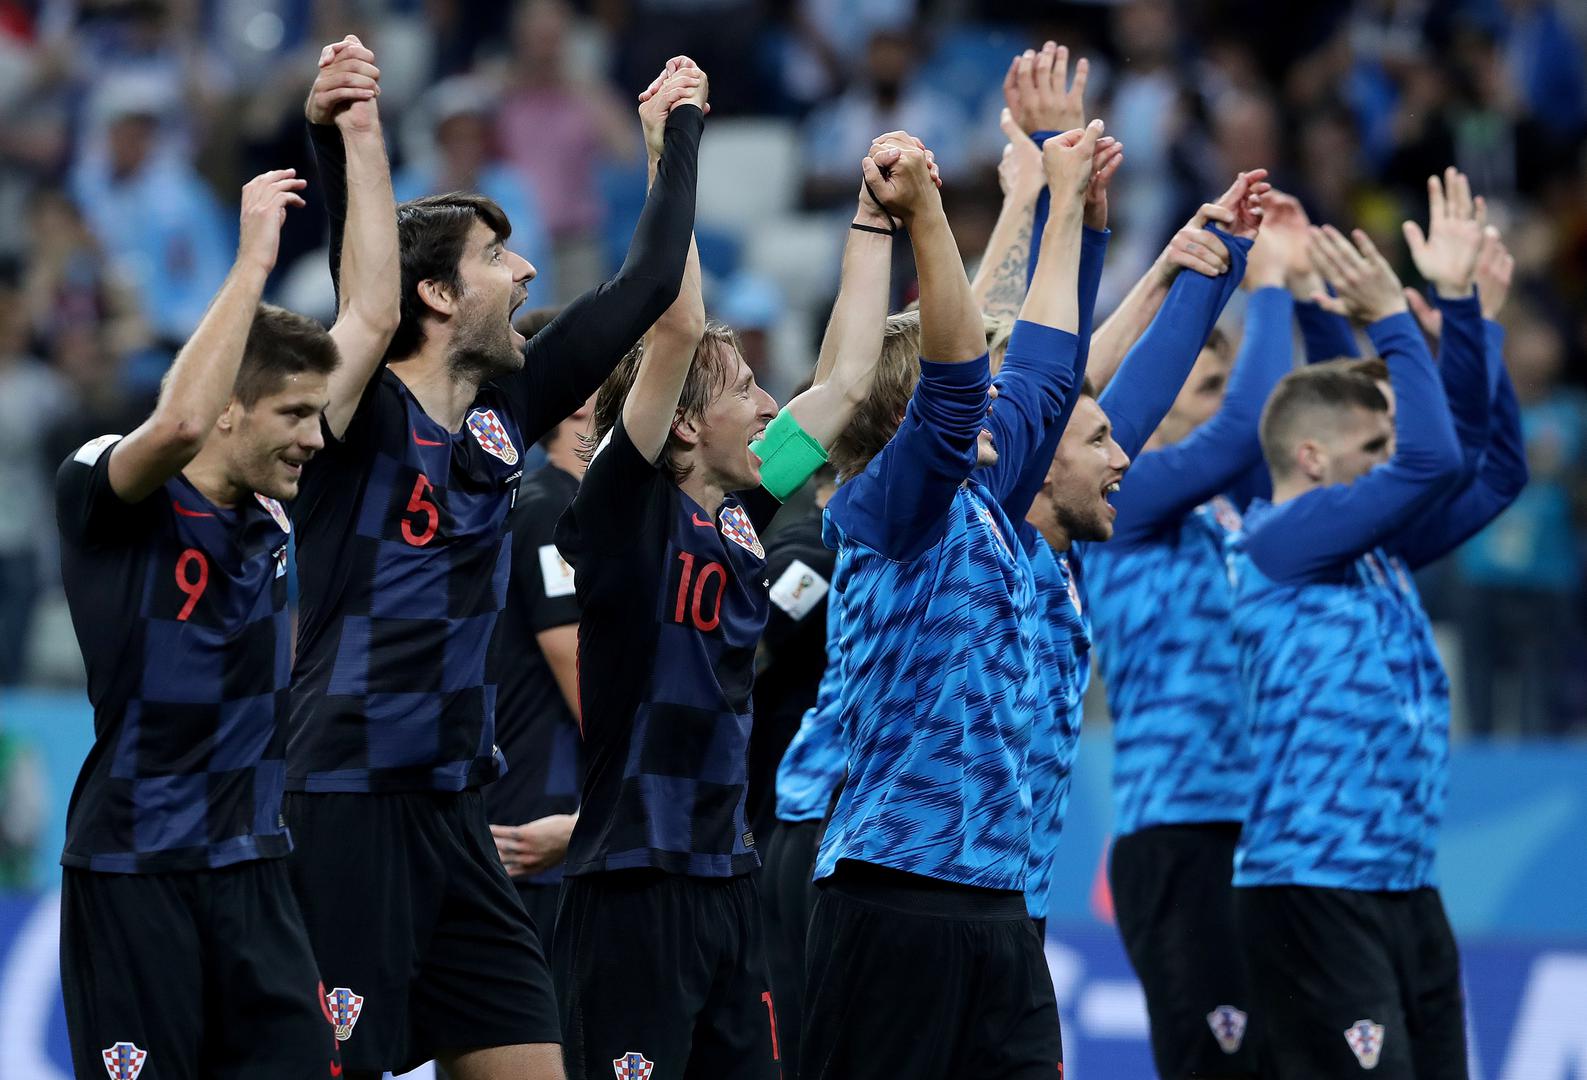 Nakon utakmice hrvatski su reprezentativci svoju radost podijelili s navijačima